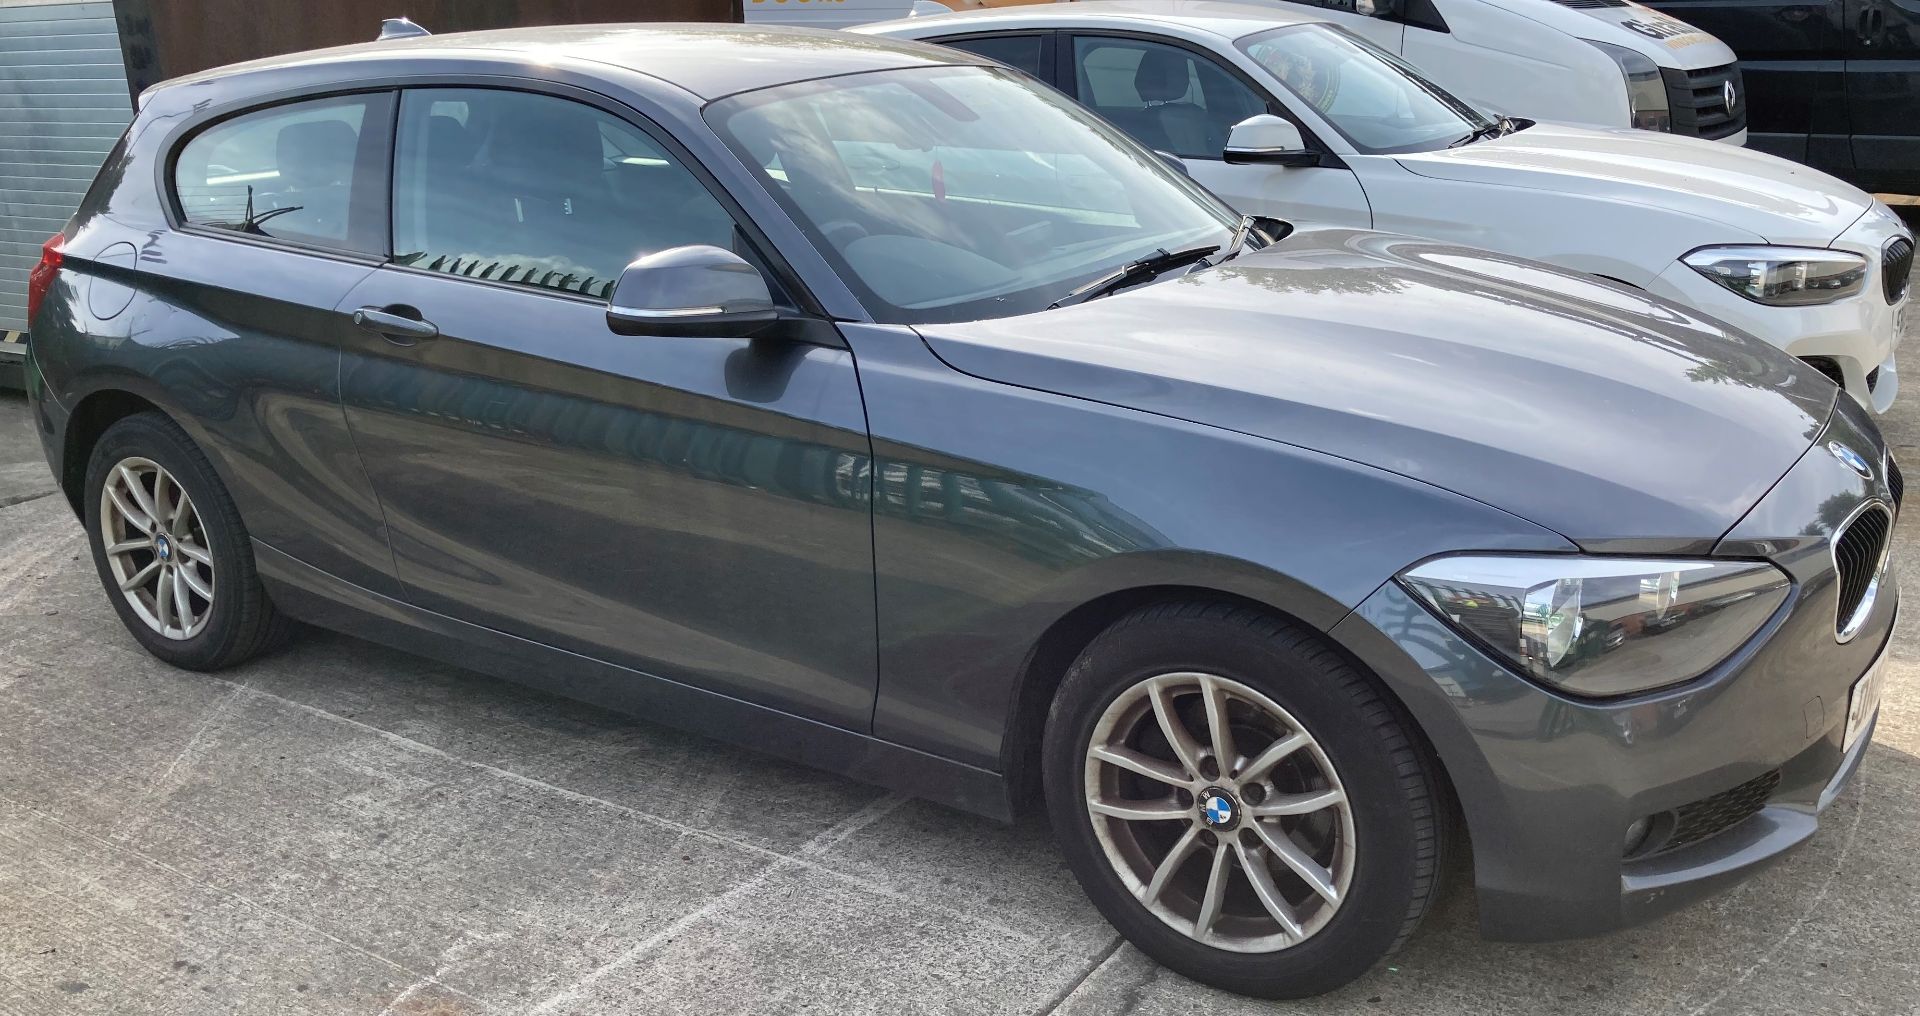 BMW 2.0 120D SE automatic three door hatchback - diesel - grey - black cloth interior.